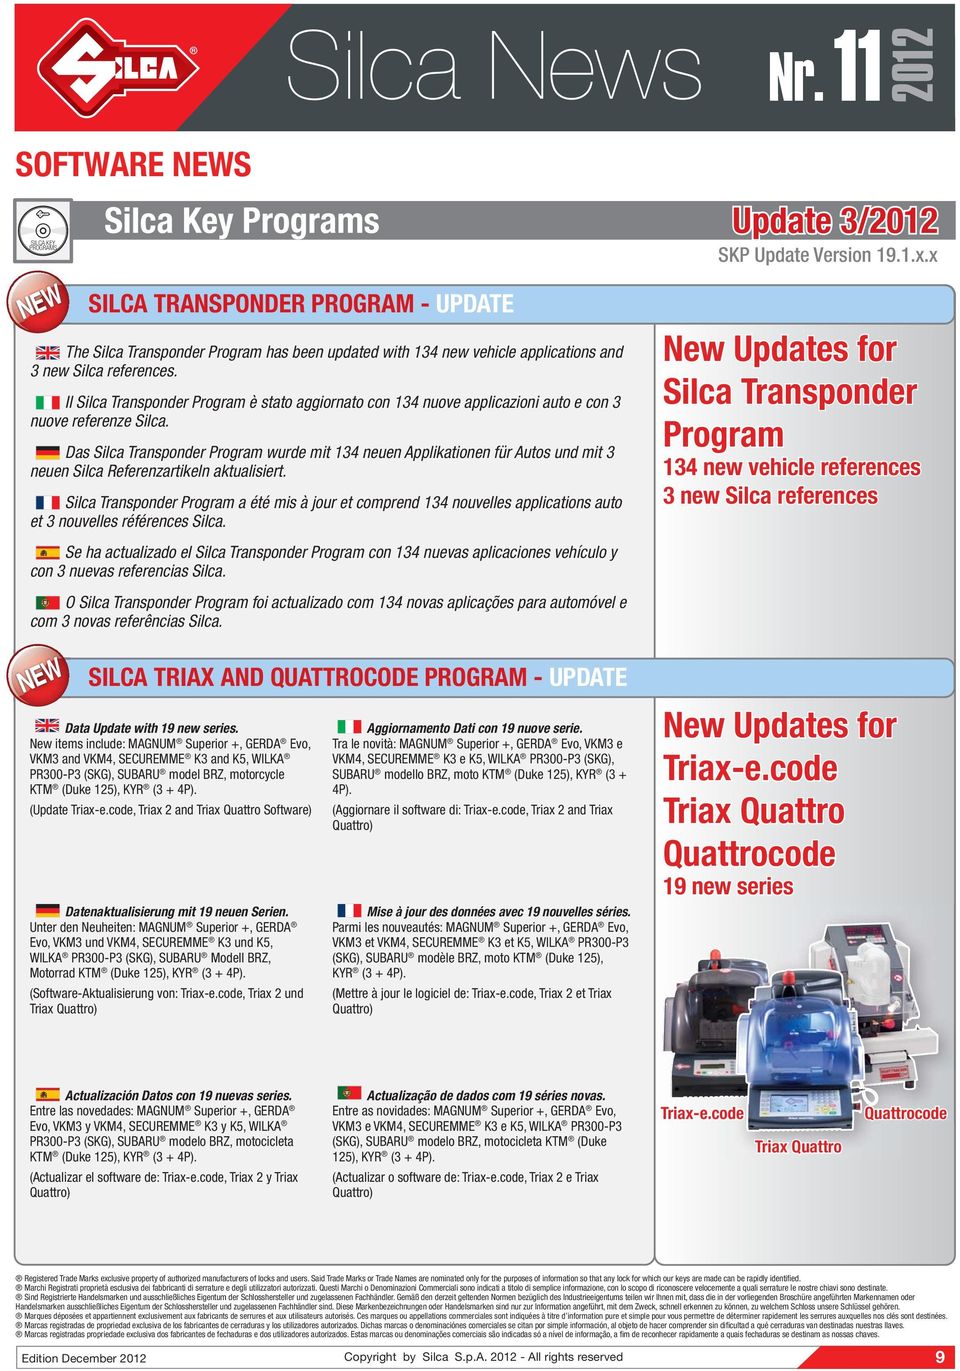 Das Silca Transponder Program wurde mit 13 neuen Applikationen für Autos und mit 3 neuen Silca Referenzartikeln aktualisiert.